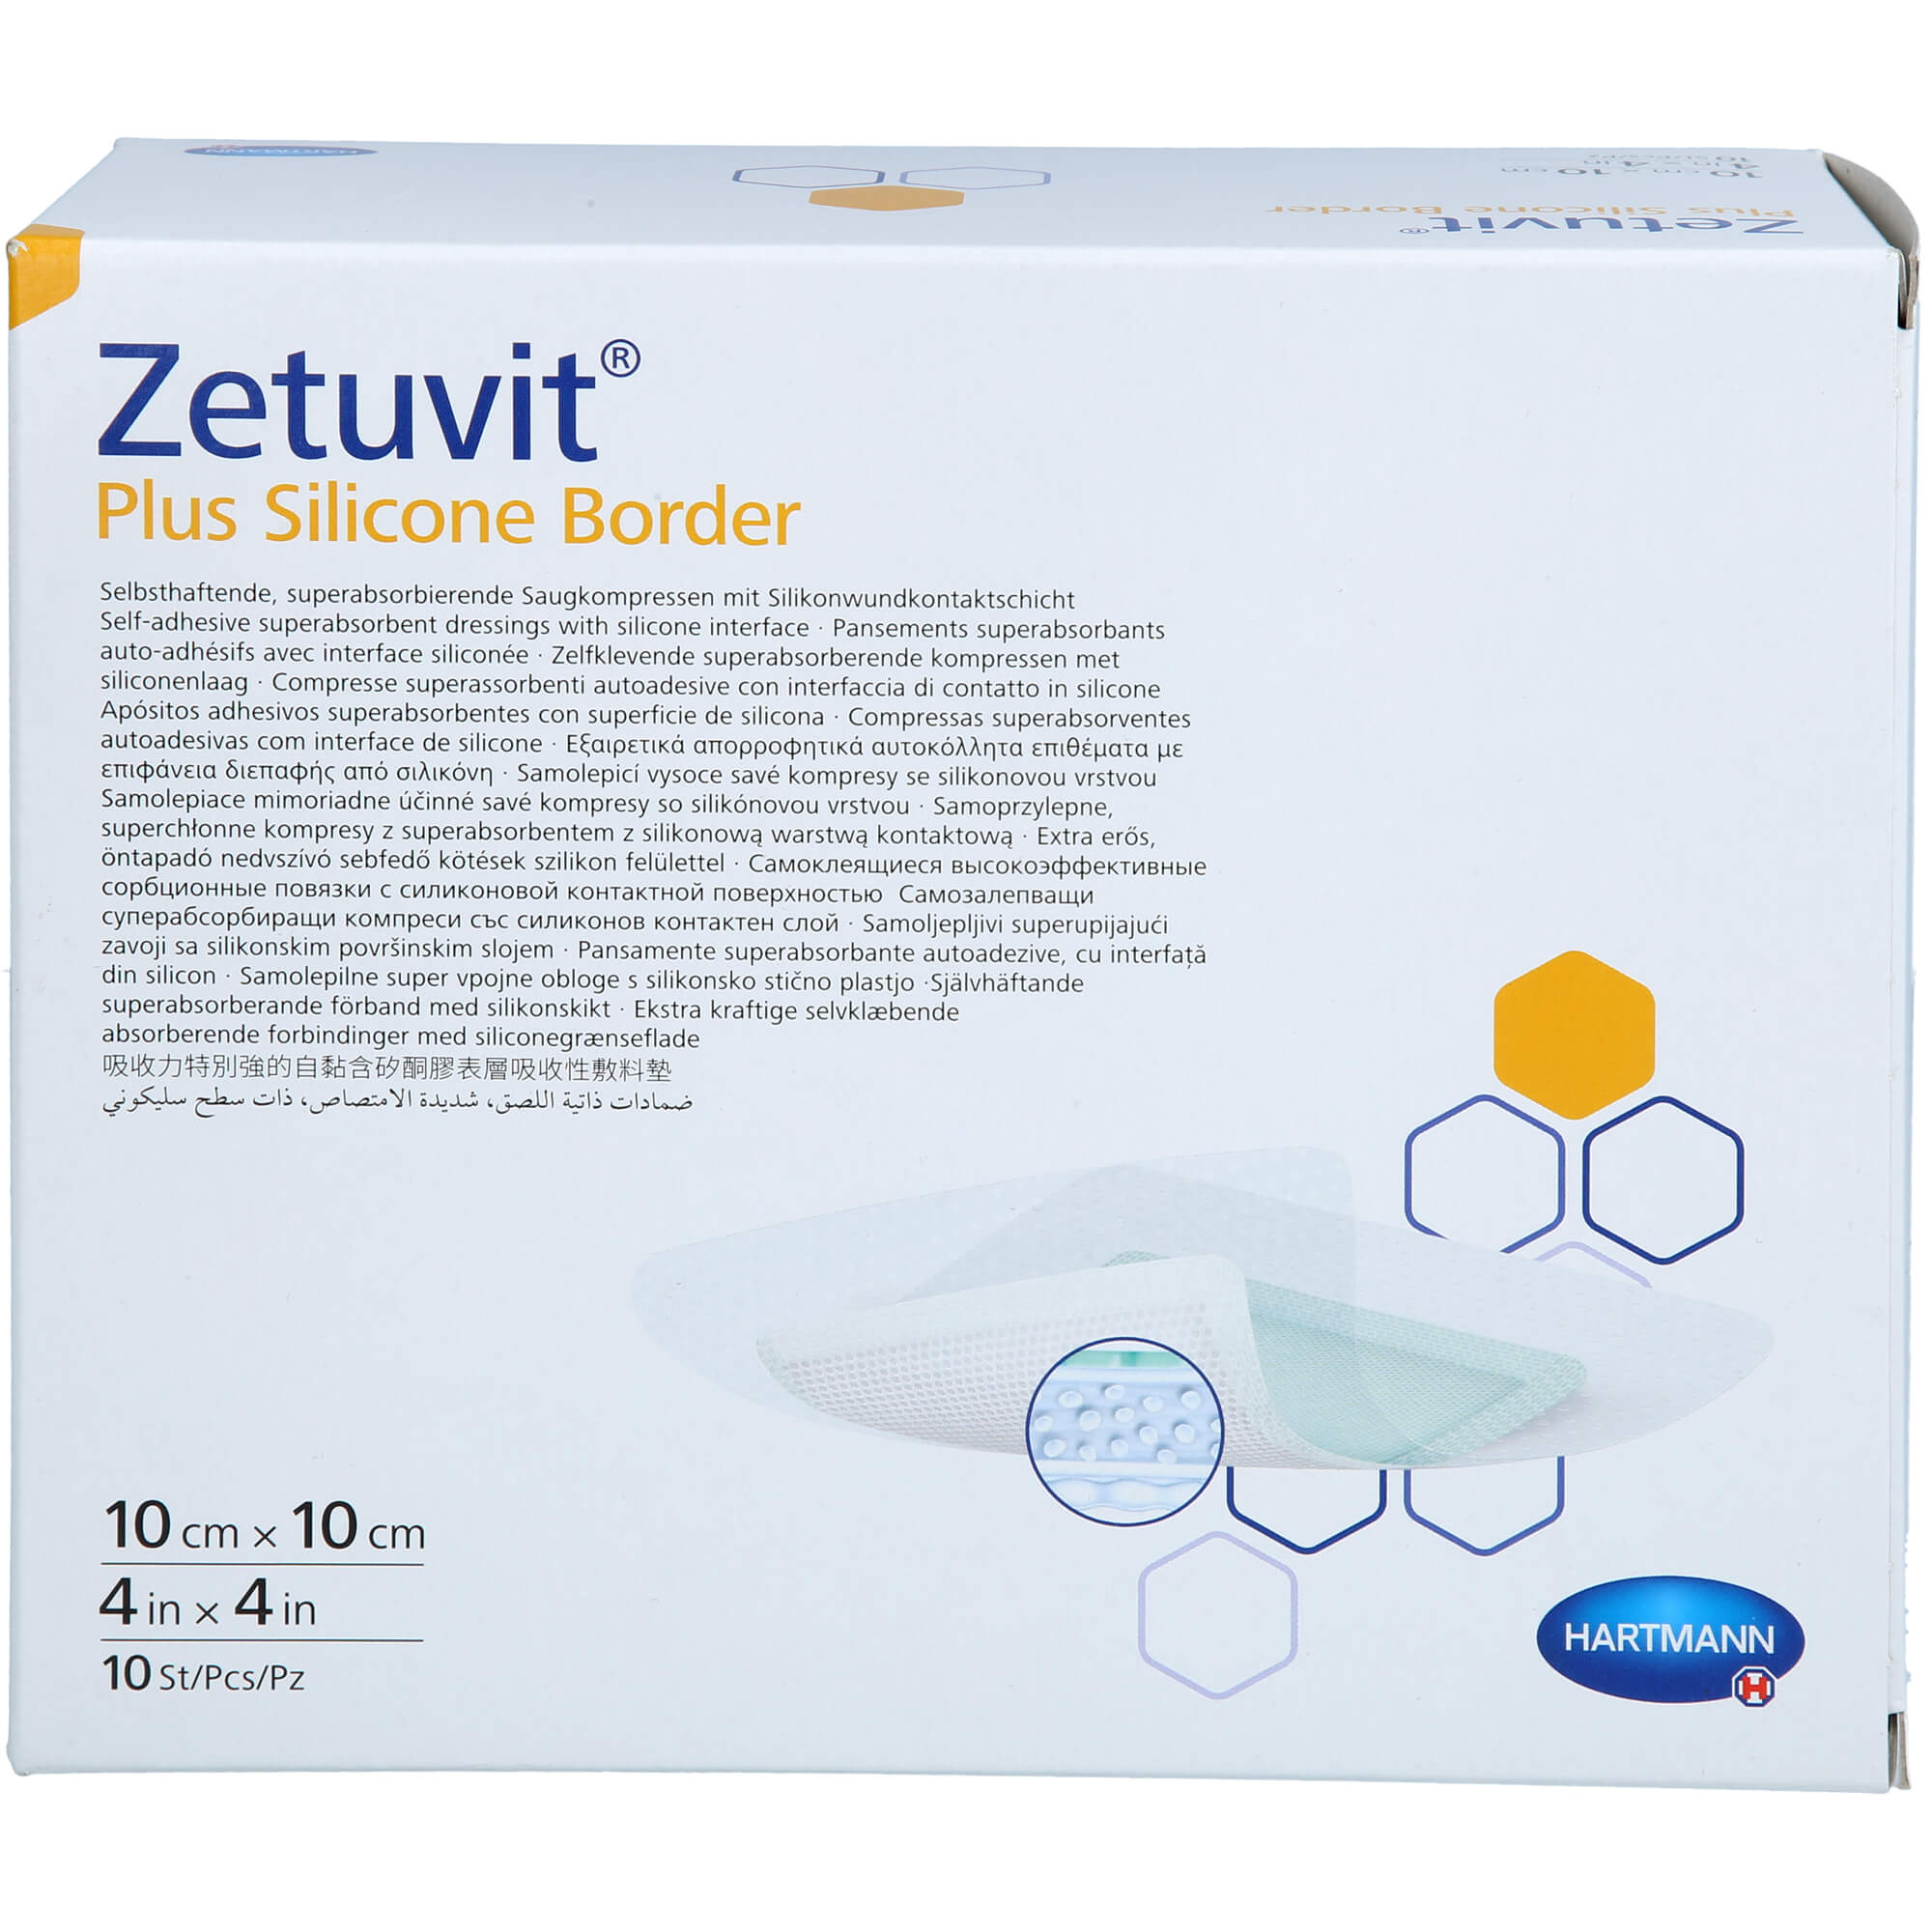 ZETUVIT Plus Silicone Border steril 10x10 cm